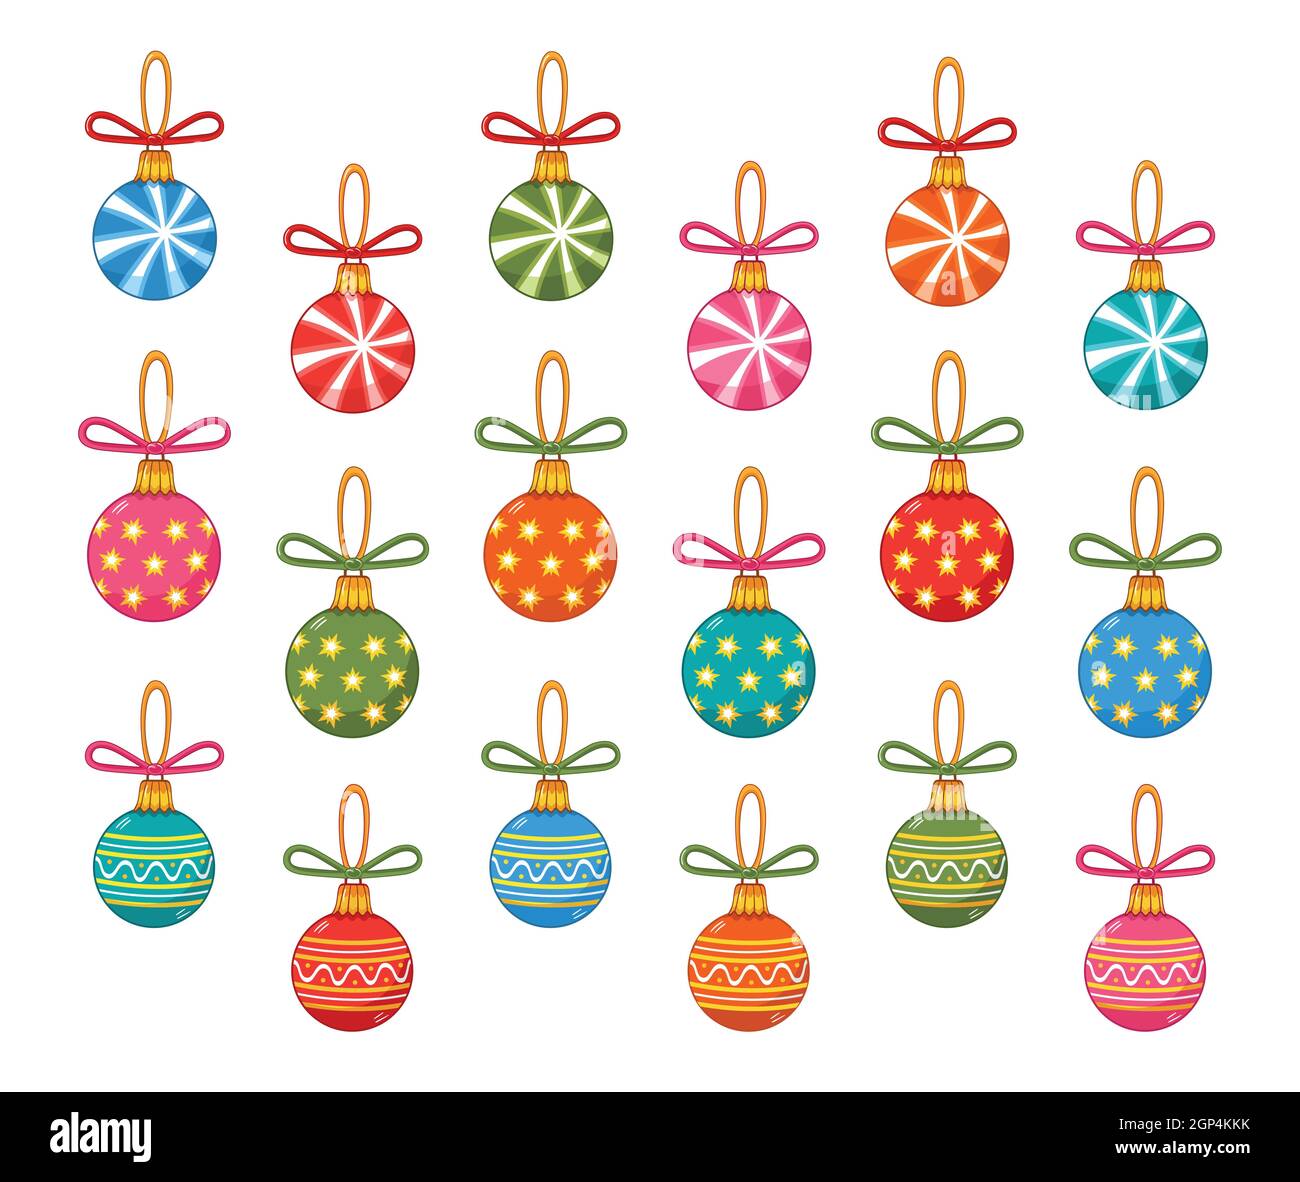 Lot de boules de Noël colorées, ensemble de jouets décoratifs en verre pour arbres Icon. Décoration Noël ou nouvel an. Boules rondes avec ornement, noeuds en ruban. Vecteur Illustration de Vecteur